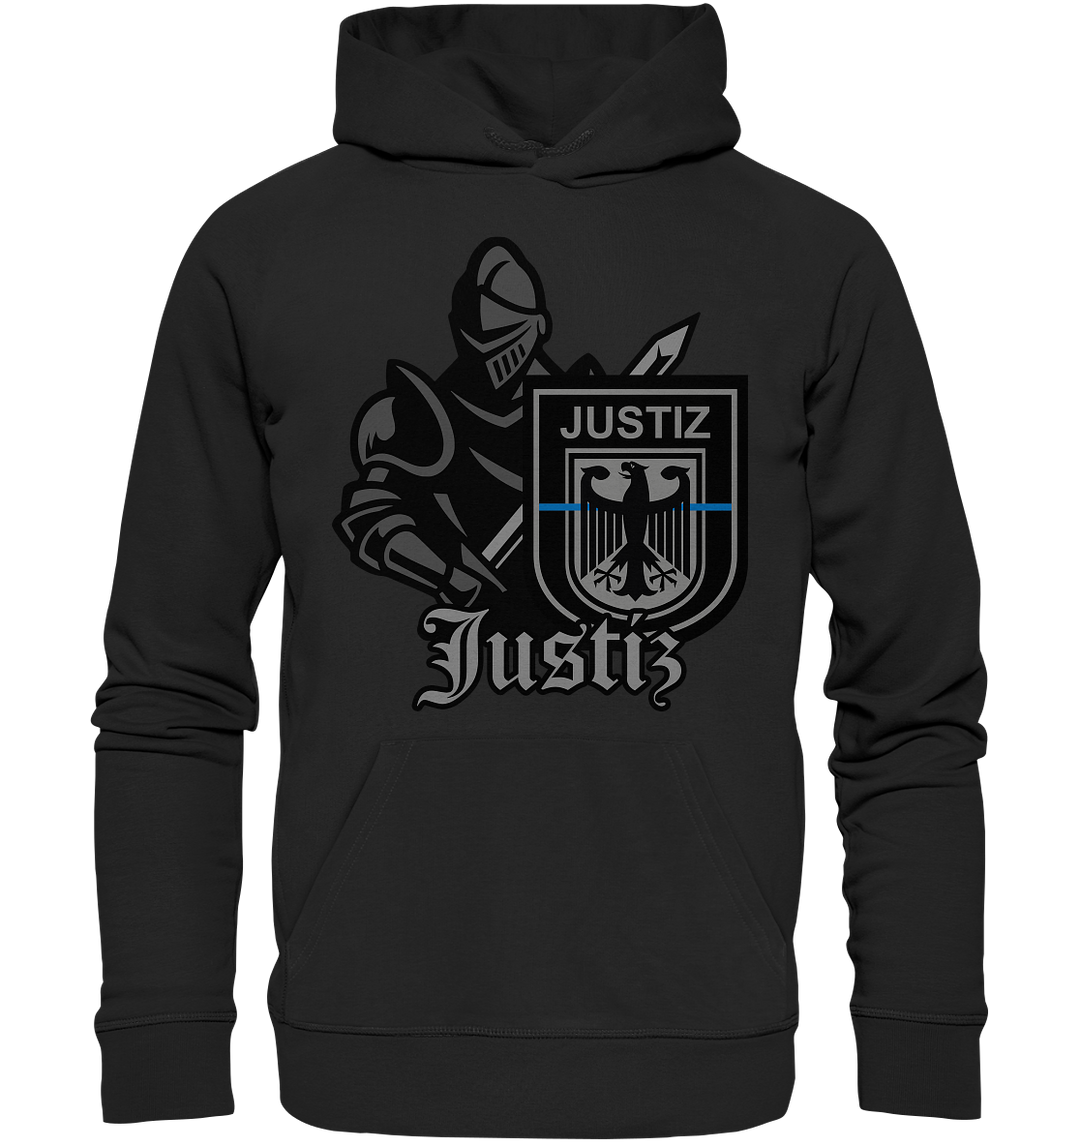 "Justiz - Ritter" - Premium Unisex Hoodie